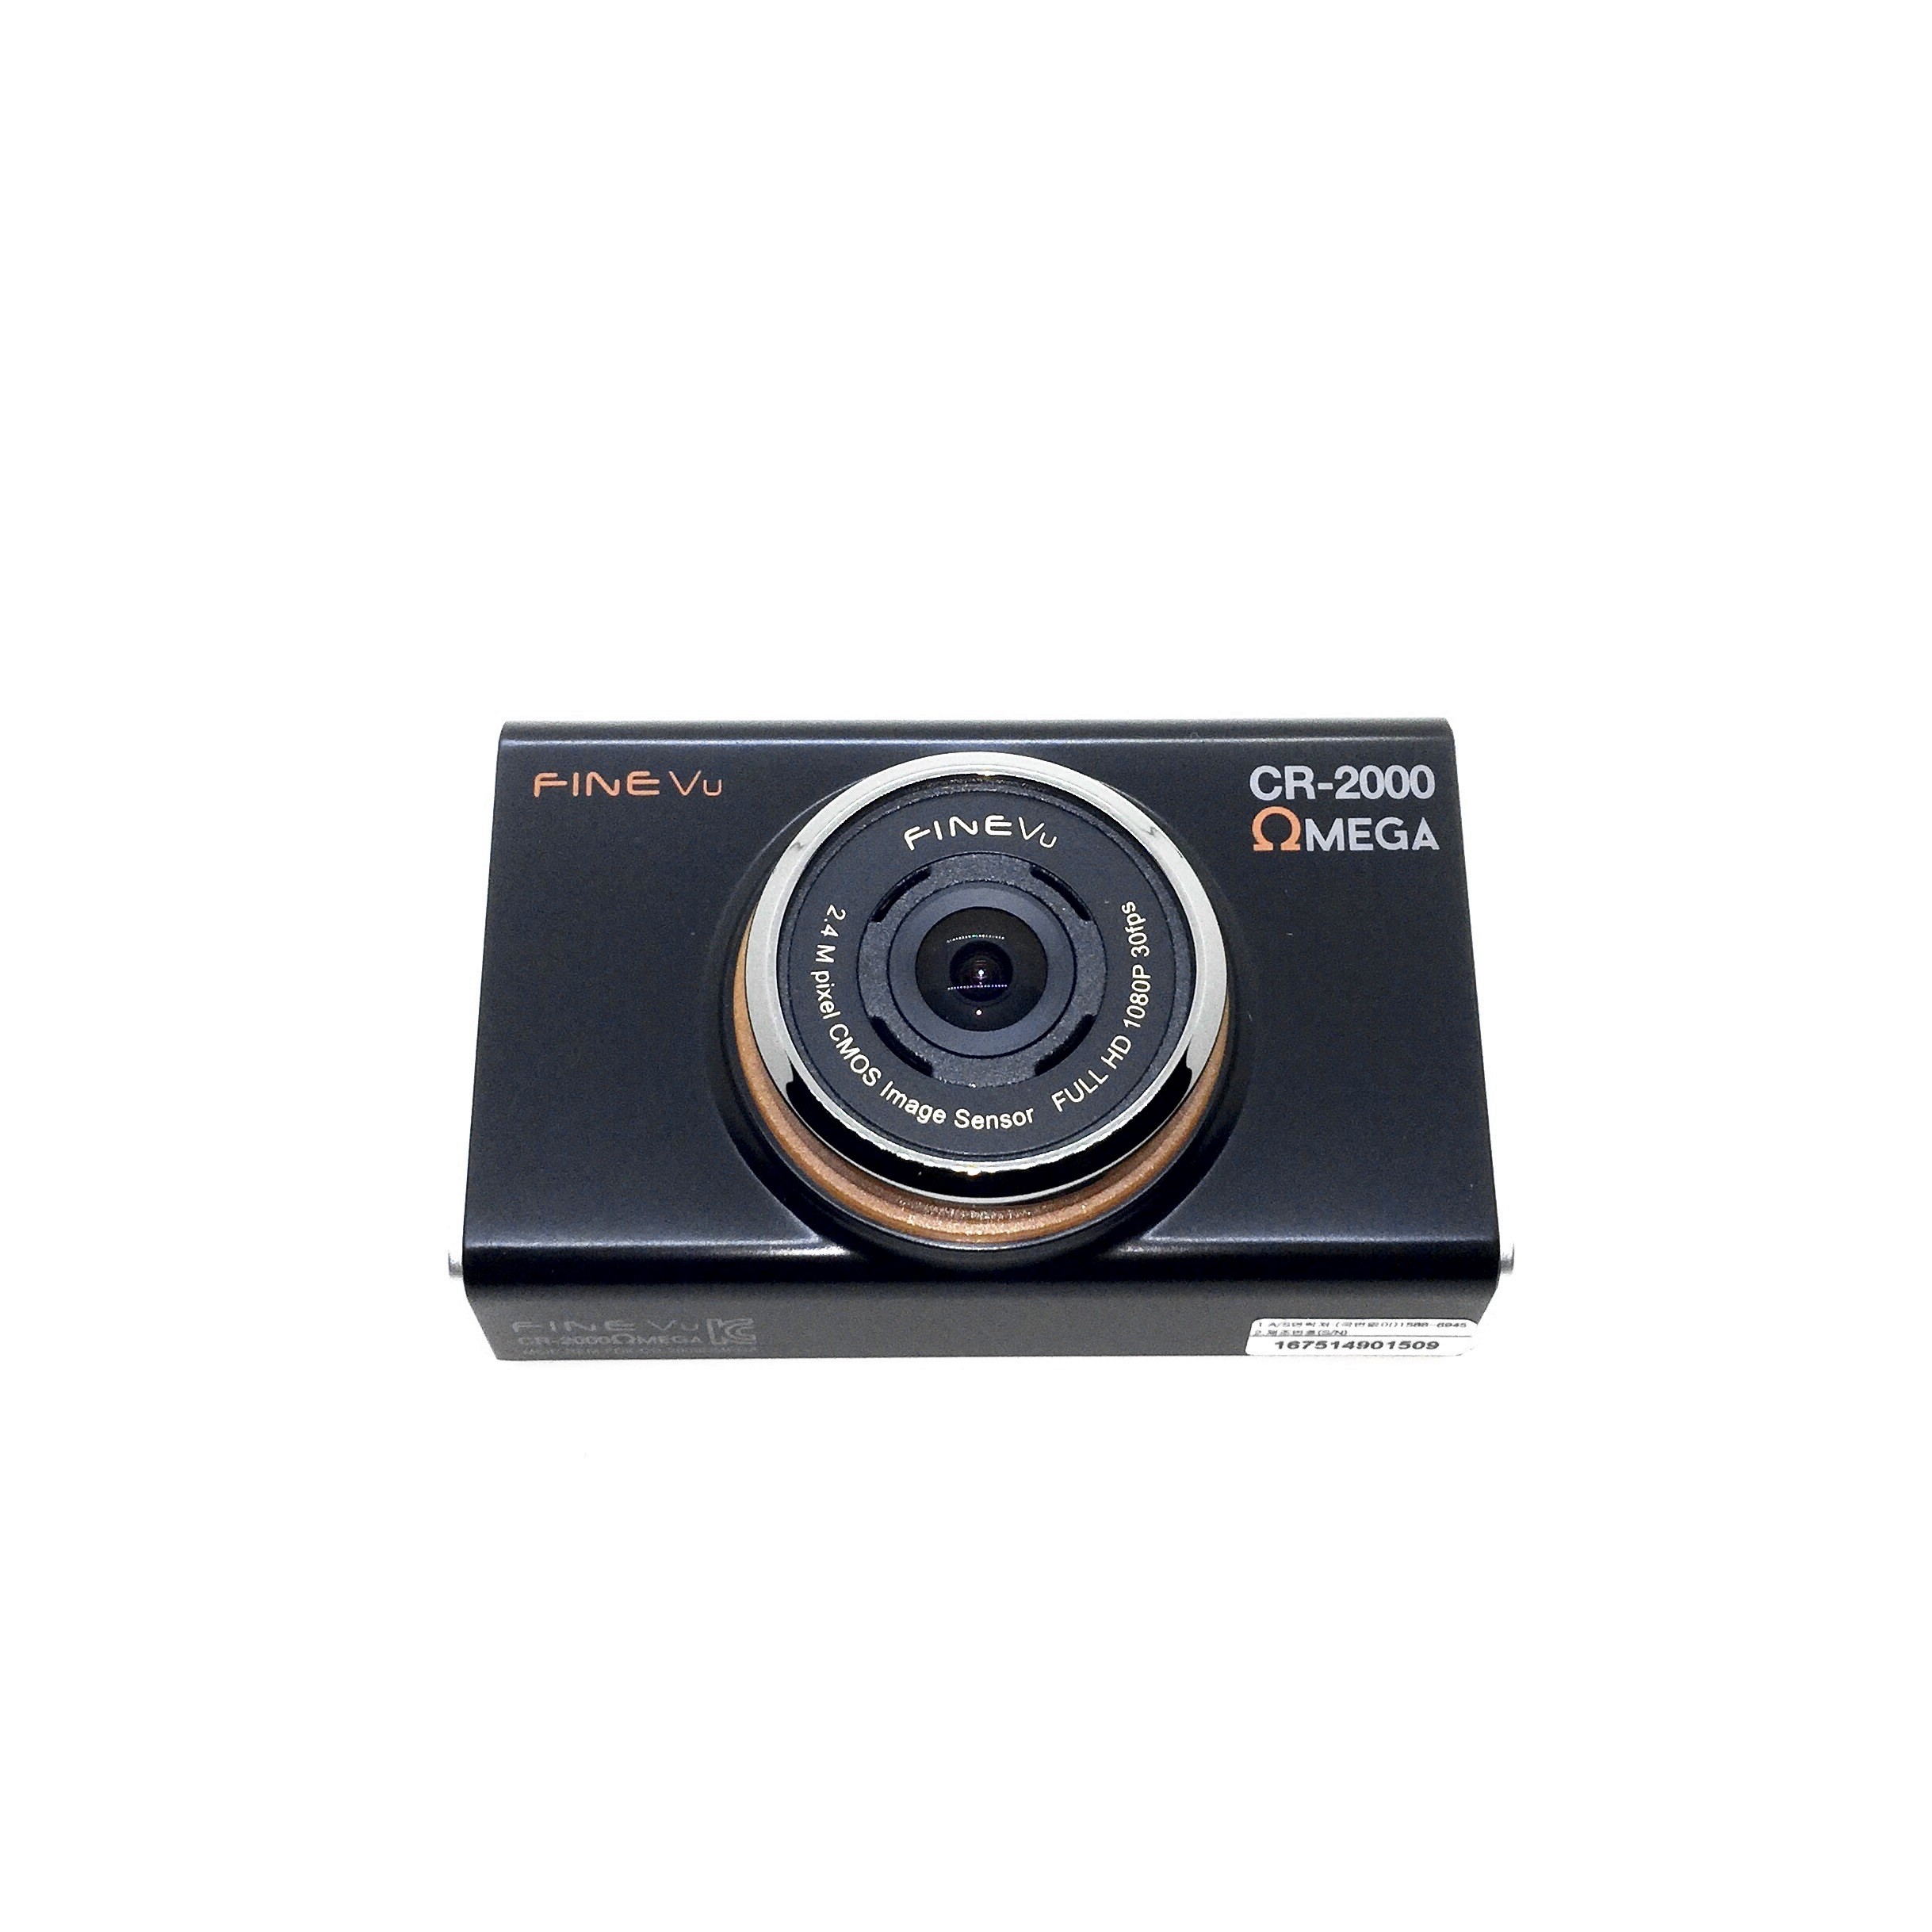 กล้องหน้า สิ่งแรกที่เห็นคือบอดี้จาก CR-2000 รุ่นก่อนๆเงา พอมาเป็น OMEGA ด้านครับ